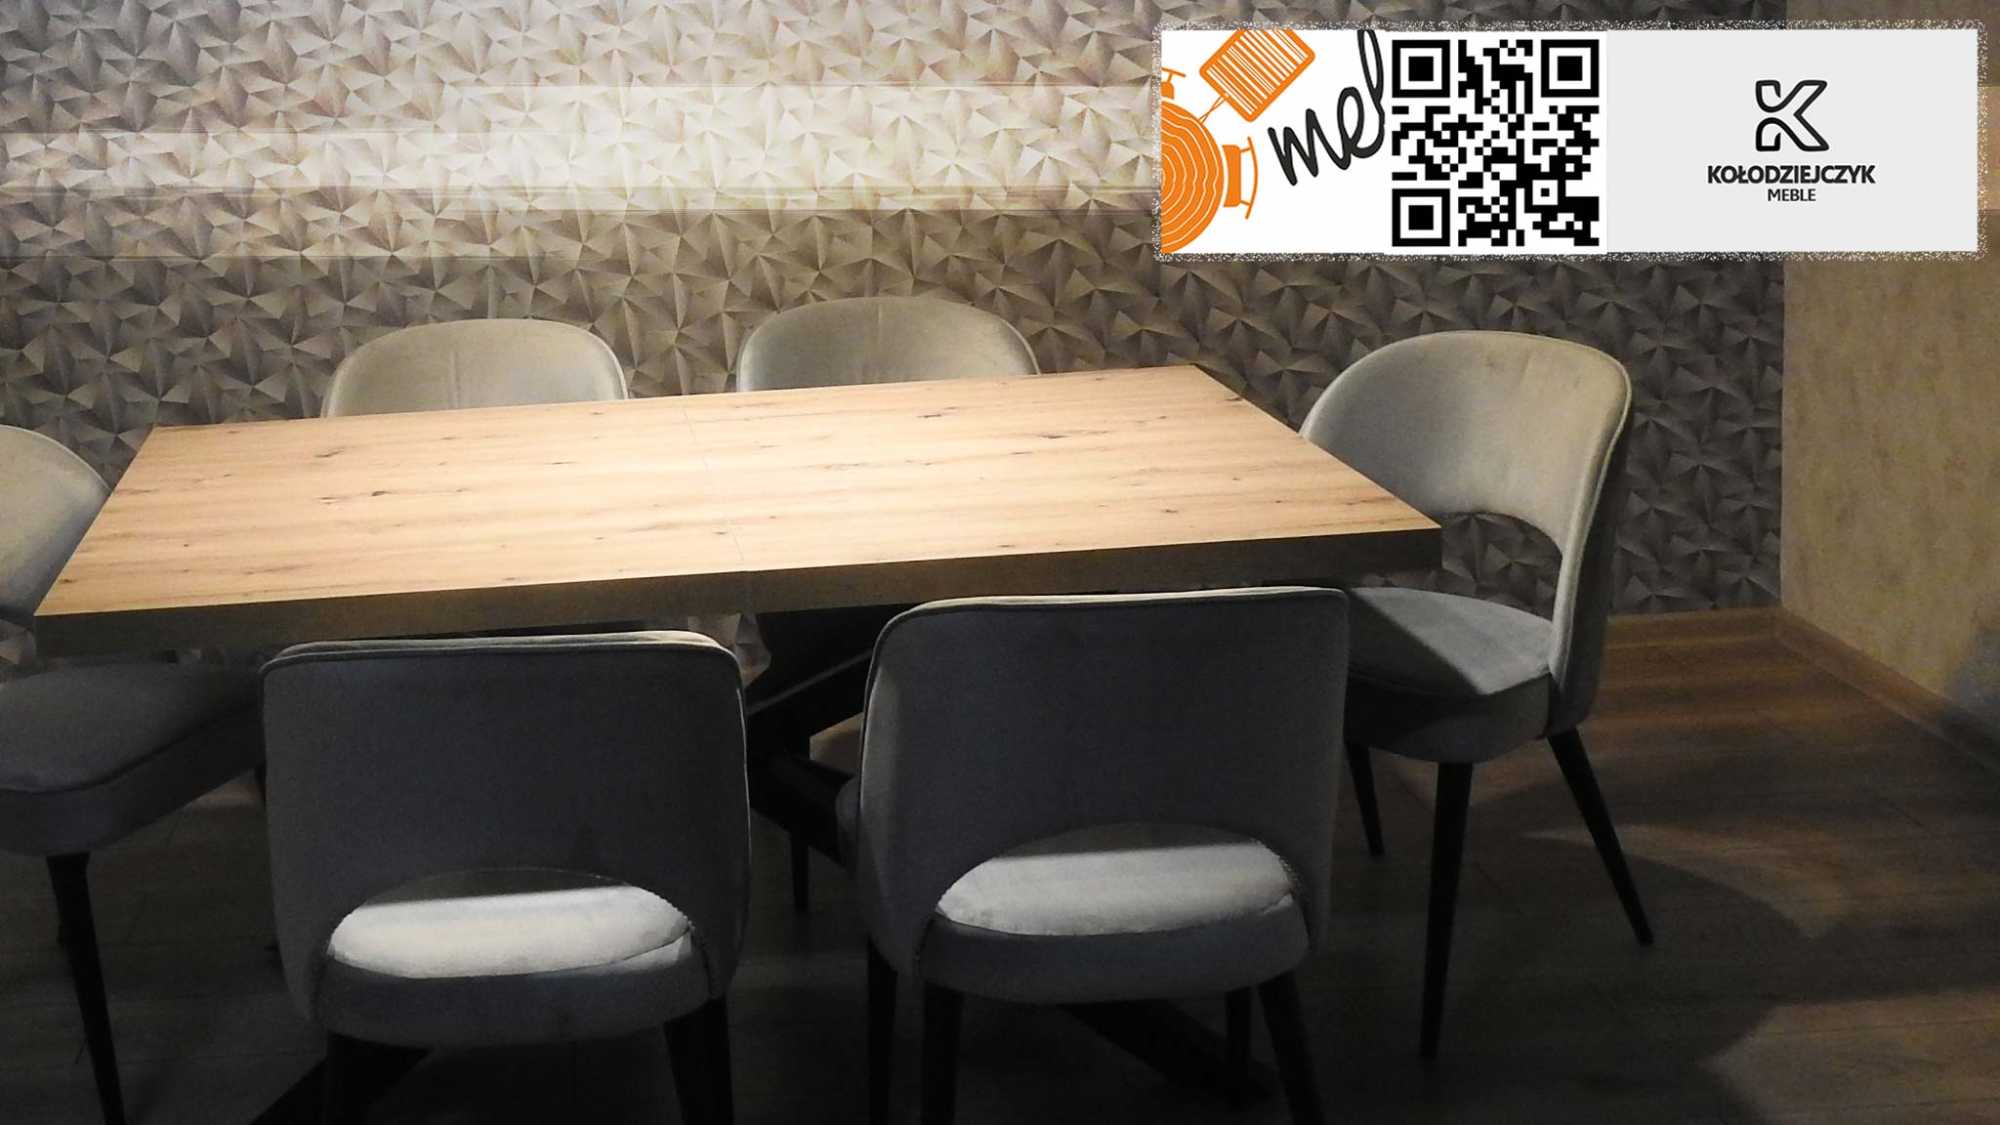 stoly w stylu loft surowy design z klasą - jakie krzesła do stołu industrialnego?